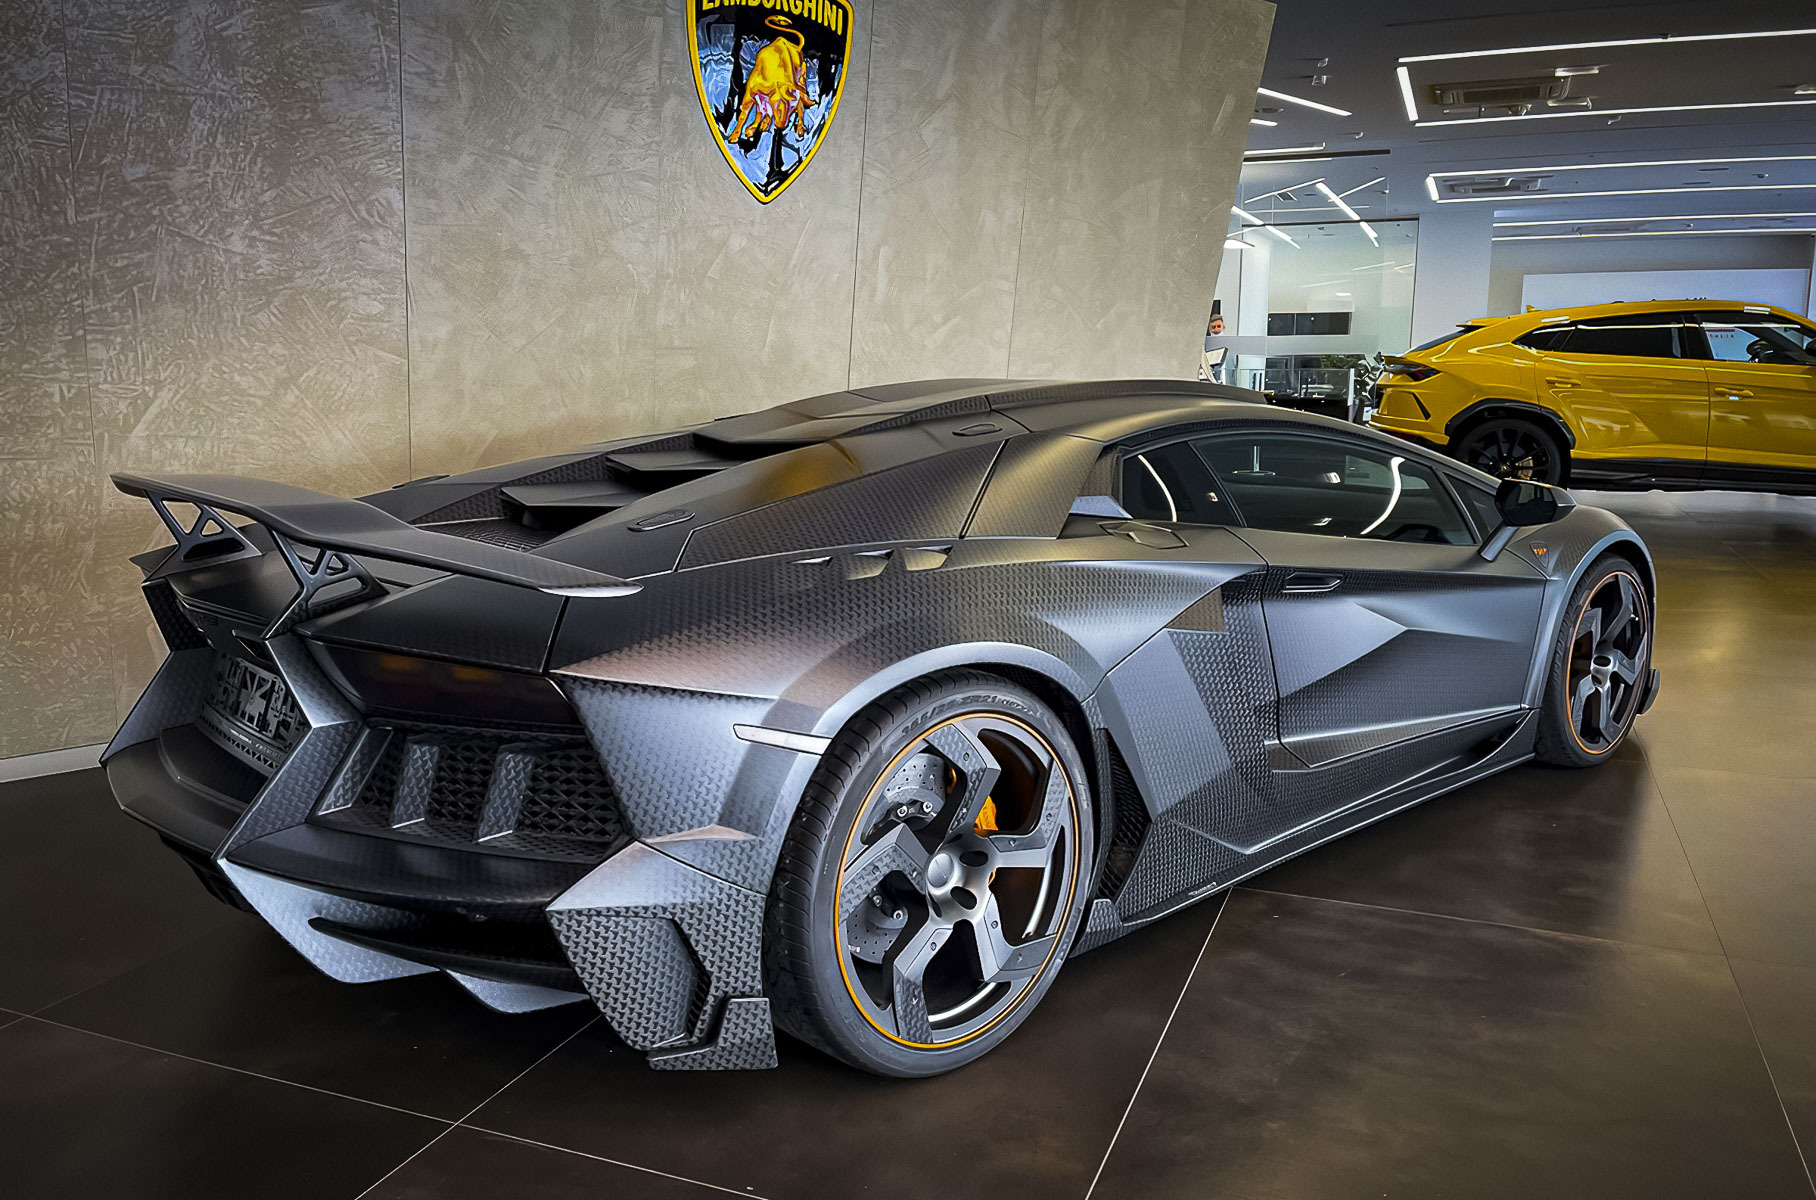 В России продают уникальный 1250-сильный Lamborghini Aventador за 64 миллиона рублей